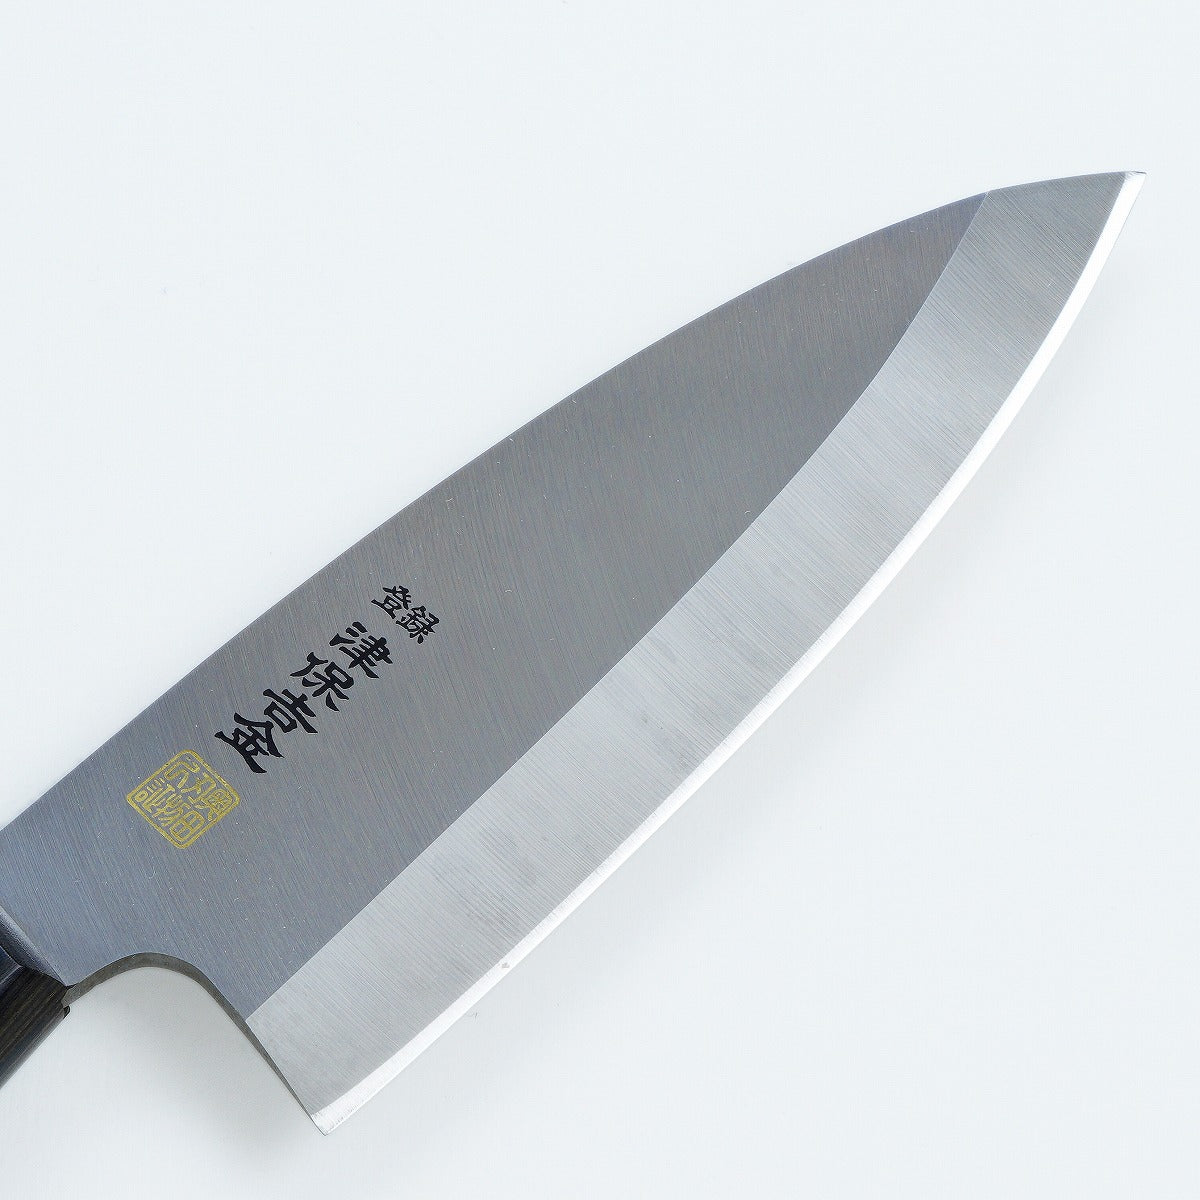 Stainless Steel 150mm Deba Knife and Nylon Case set